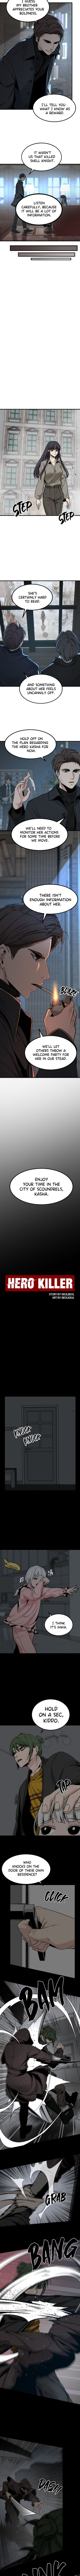 hero_killer_99_4